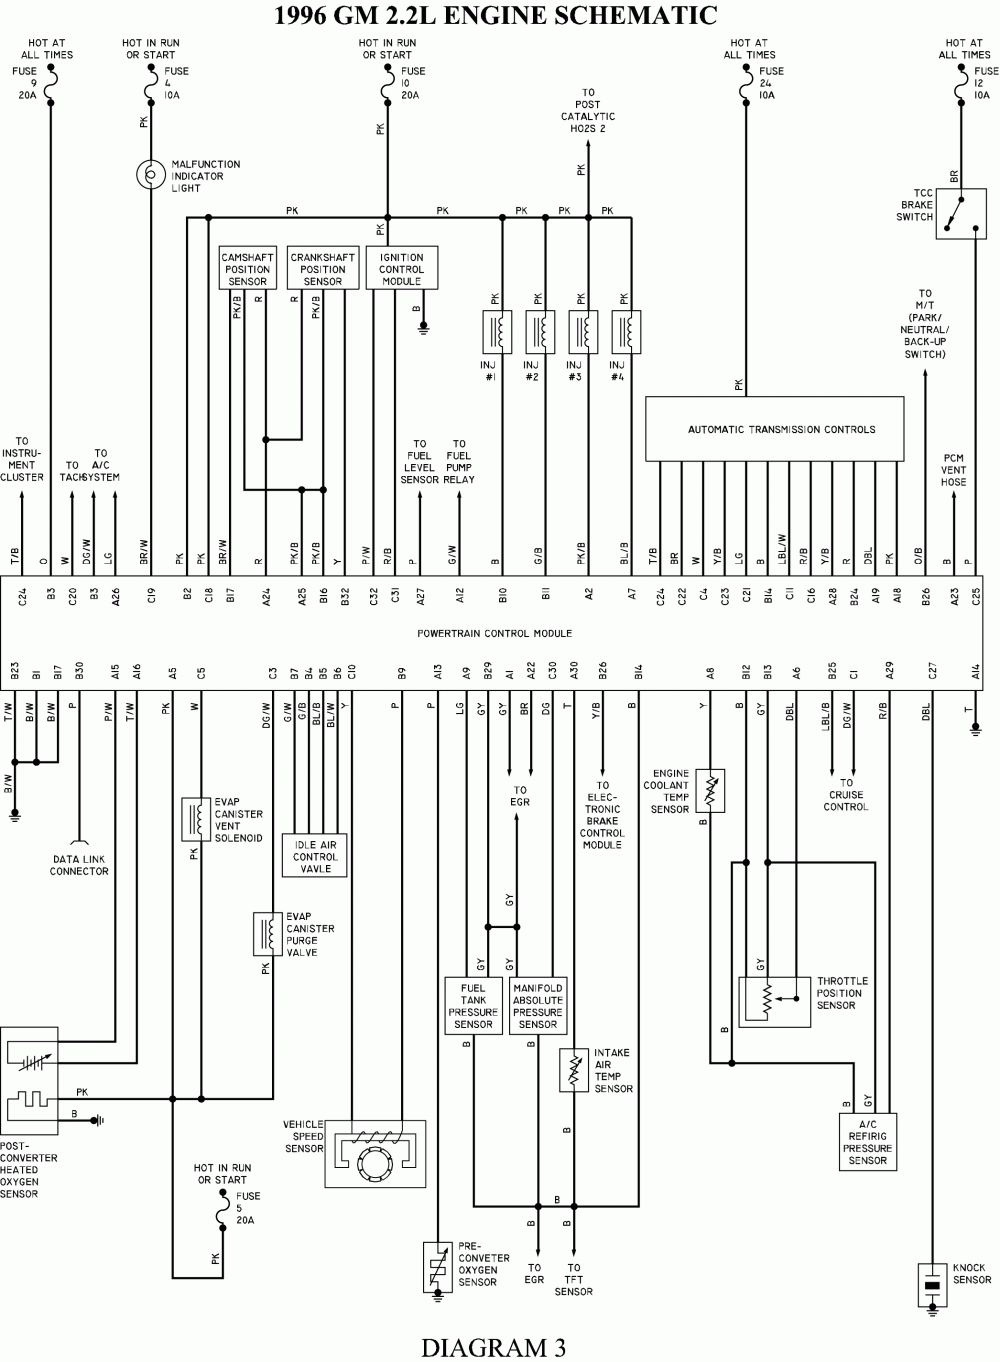 Chevy S10 Schematics | Wiring Diagram - 1996 Chevy Silverado Wiring Diagram